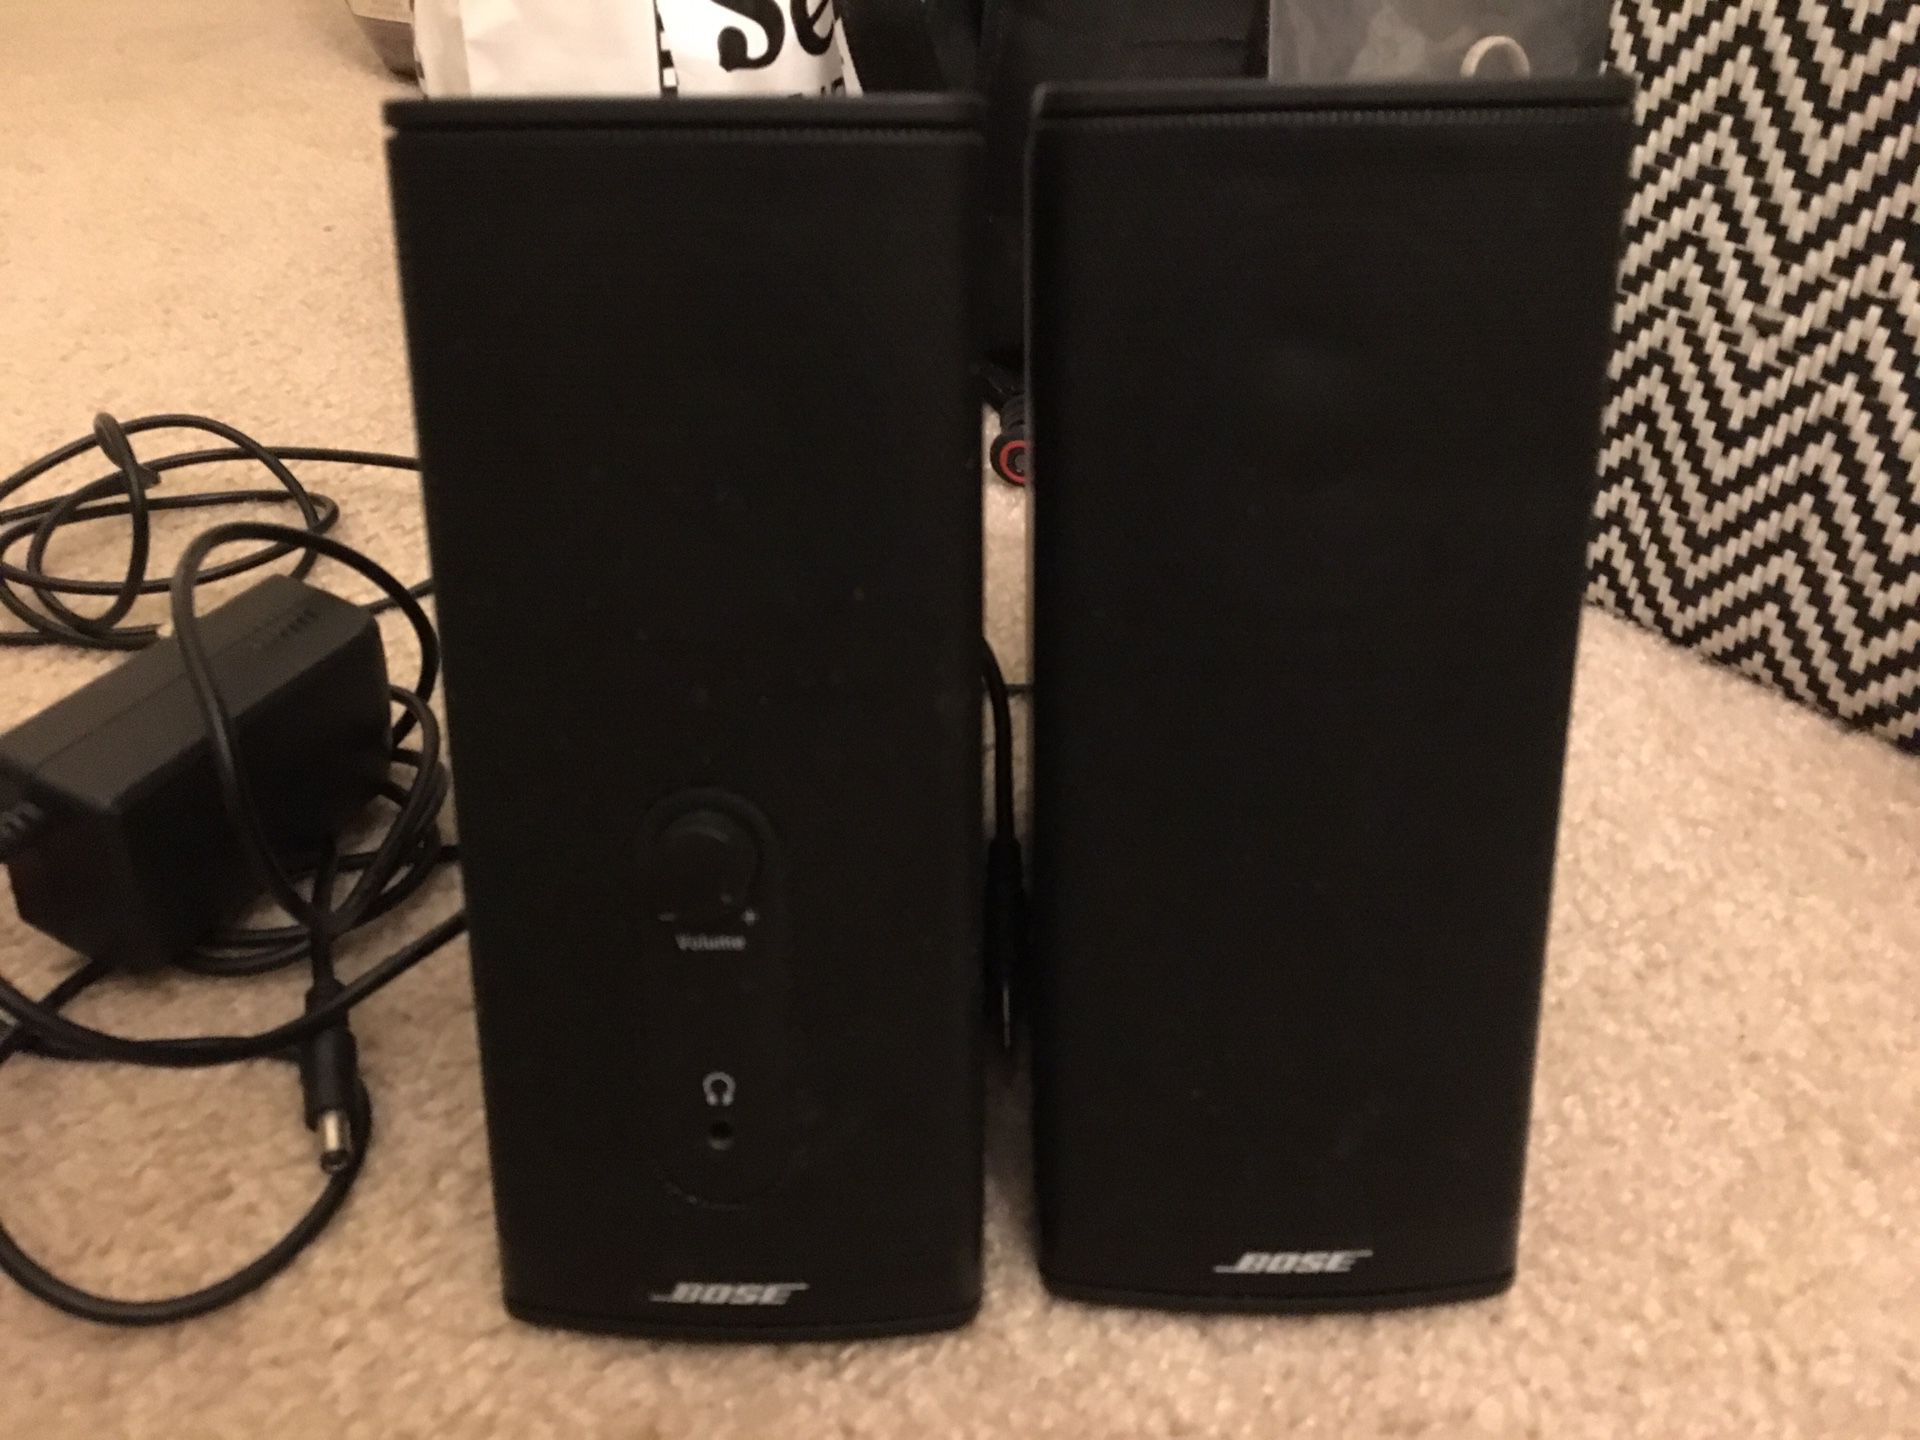 BOSE speakers